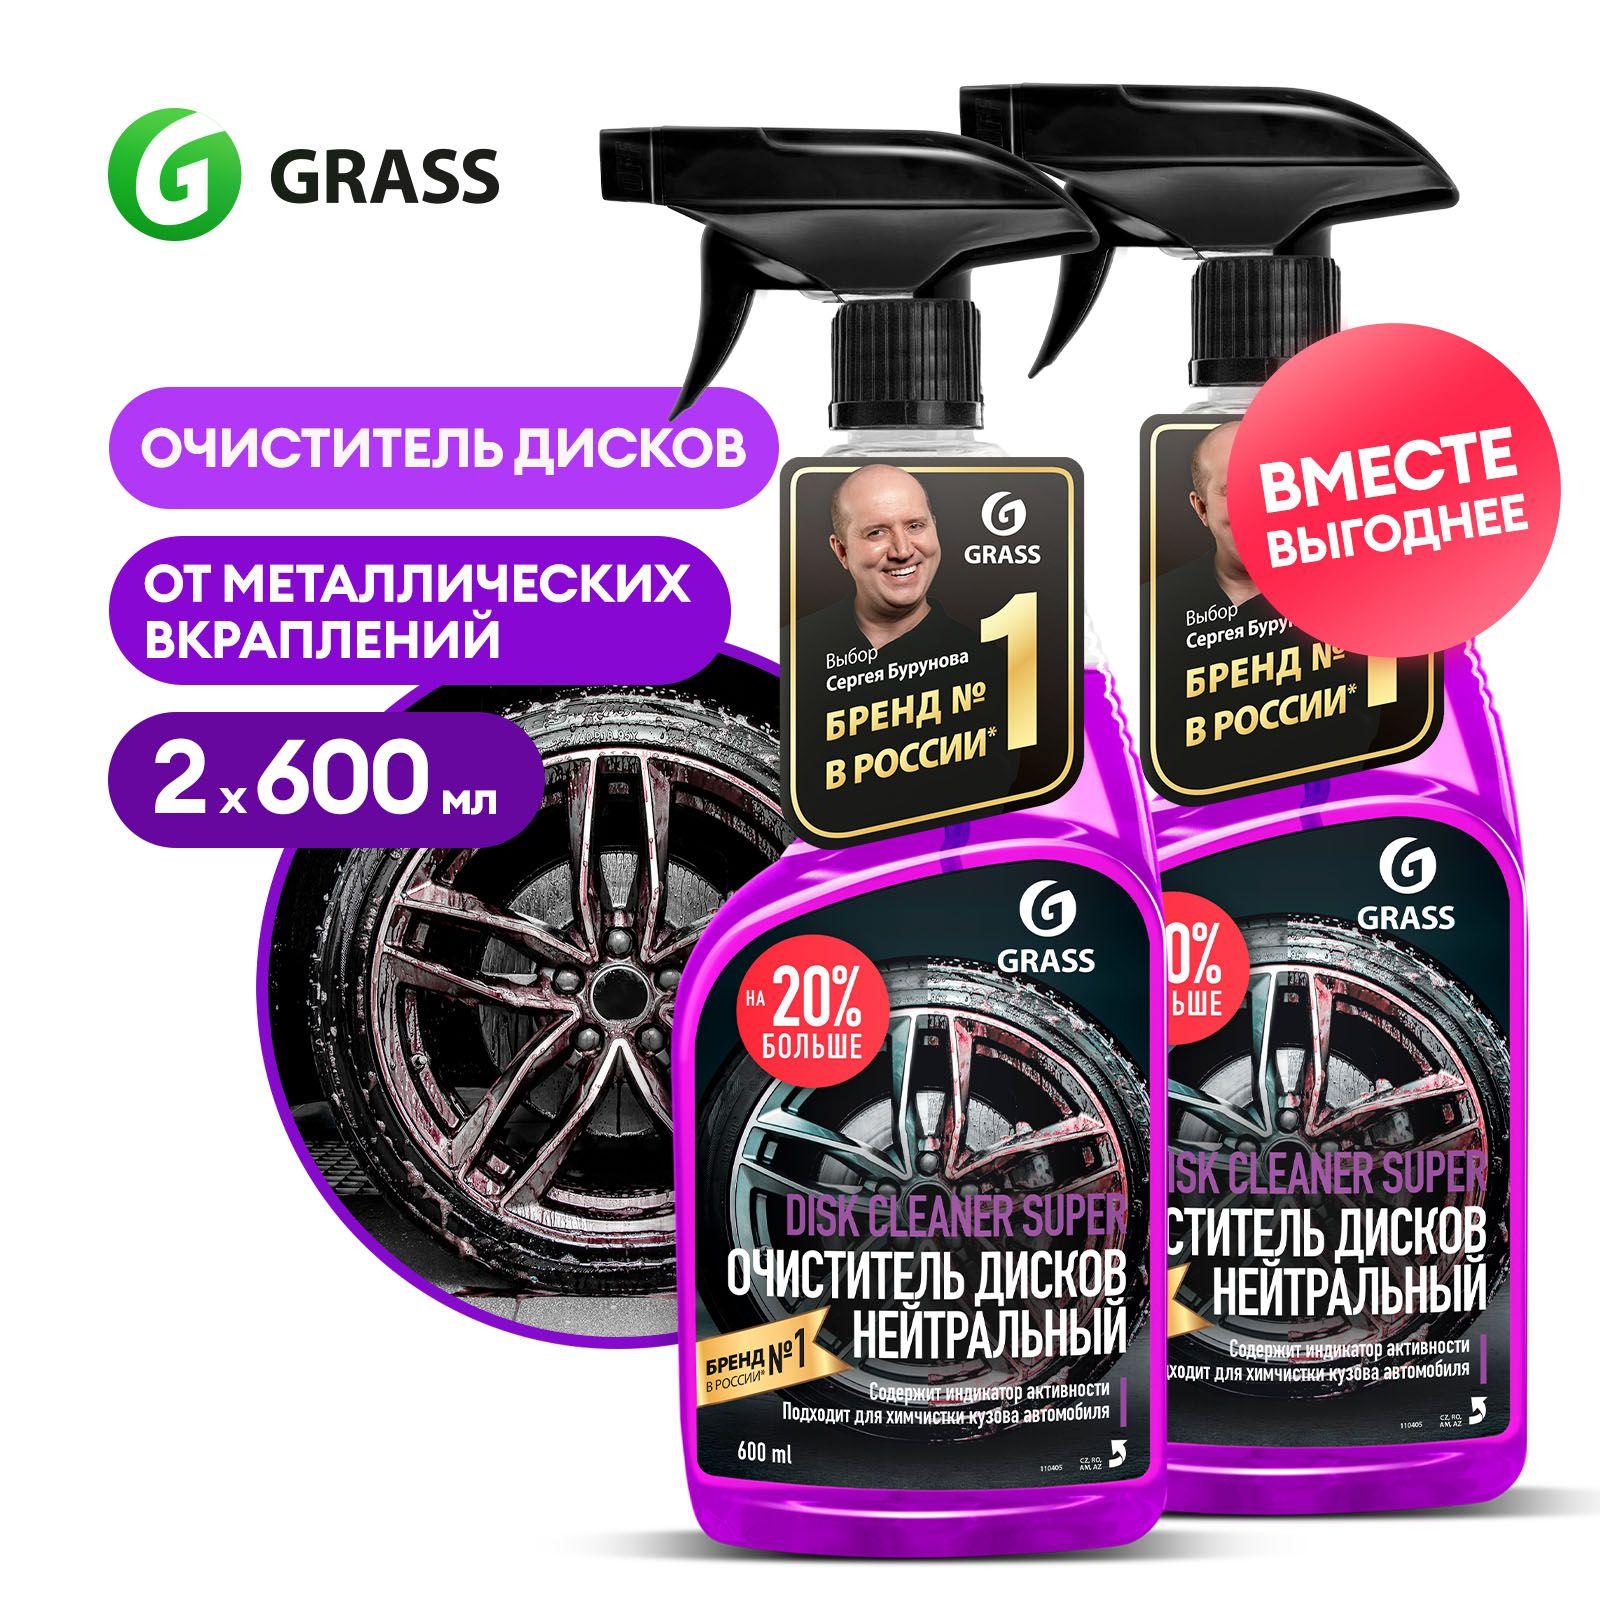 Grass | Очиститель колесных дисков автомобиля GRASS Cleaner Super с индикацией 600 мл (набор из 2 шт.)